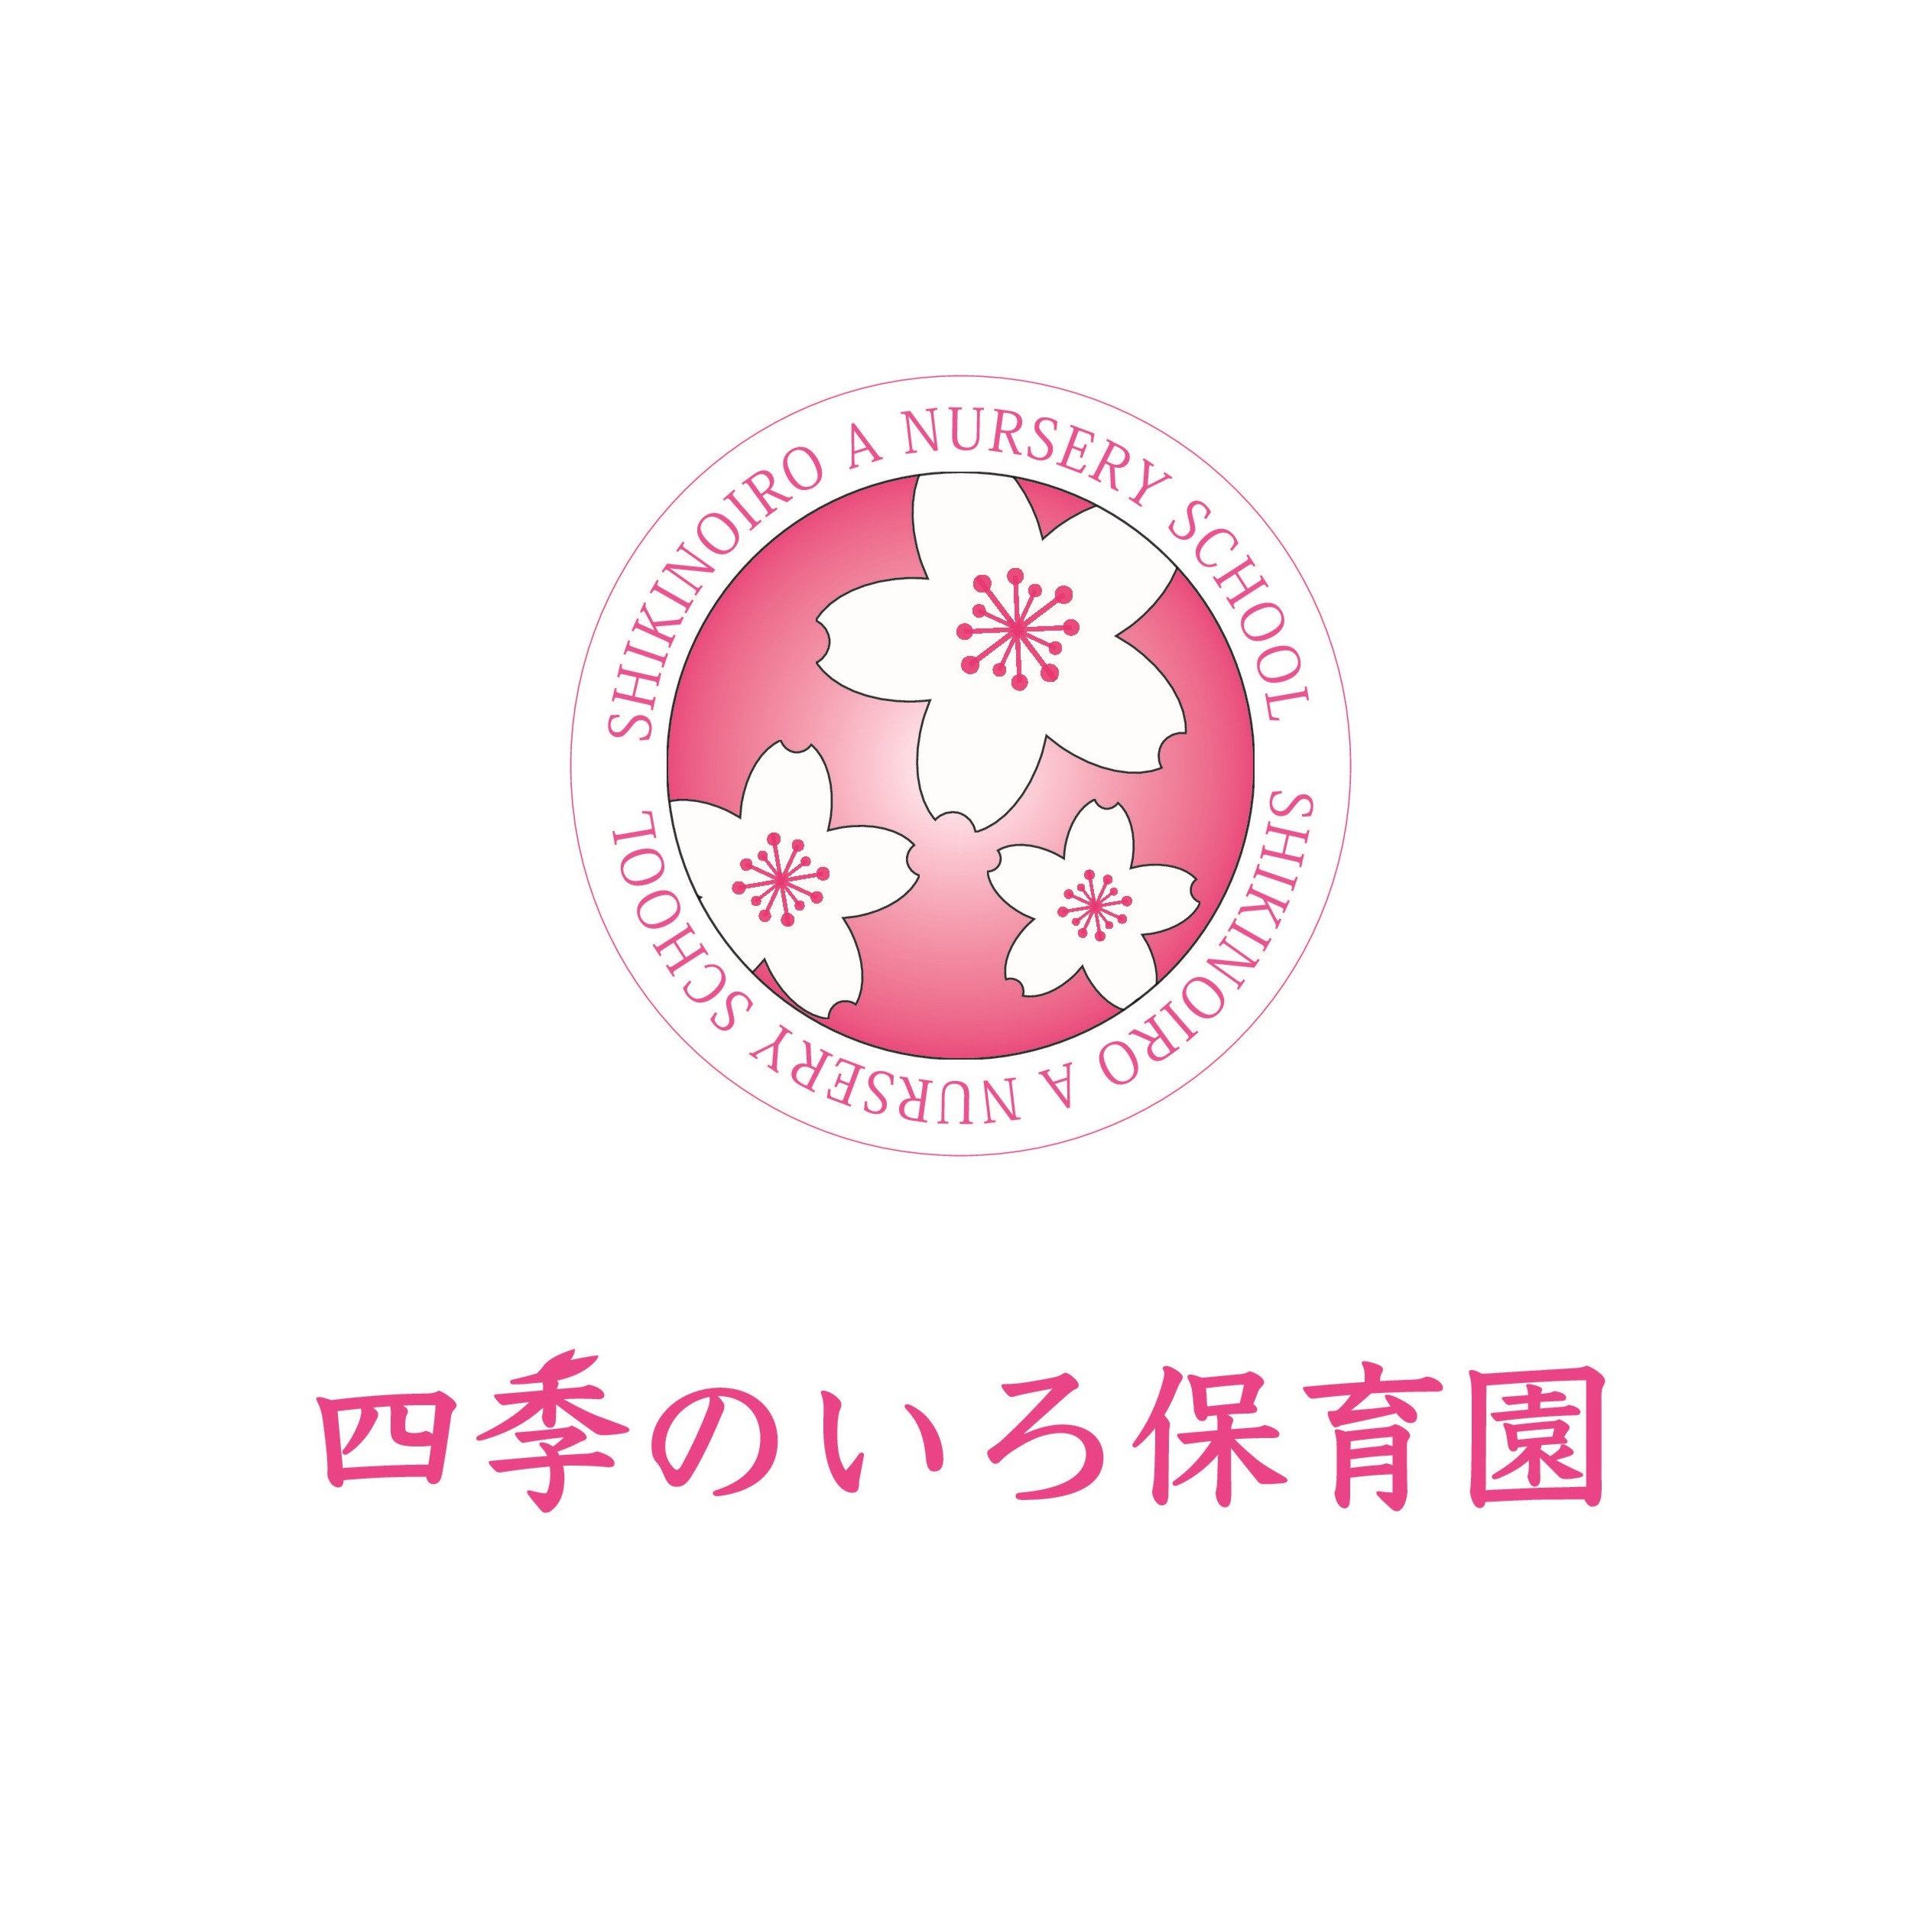 四季のいろ保育園 舞鶴園 Logo